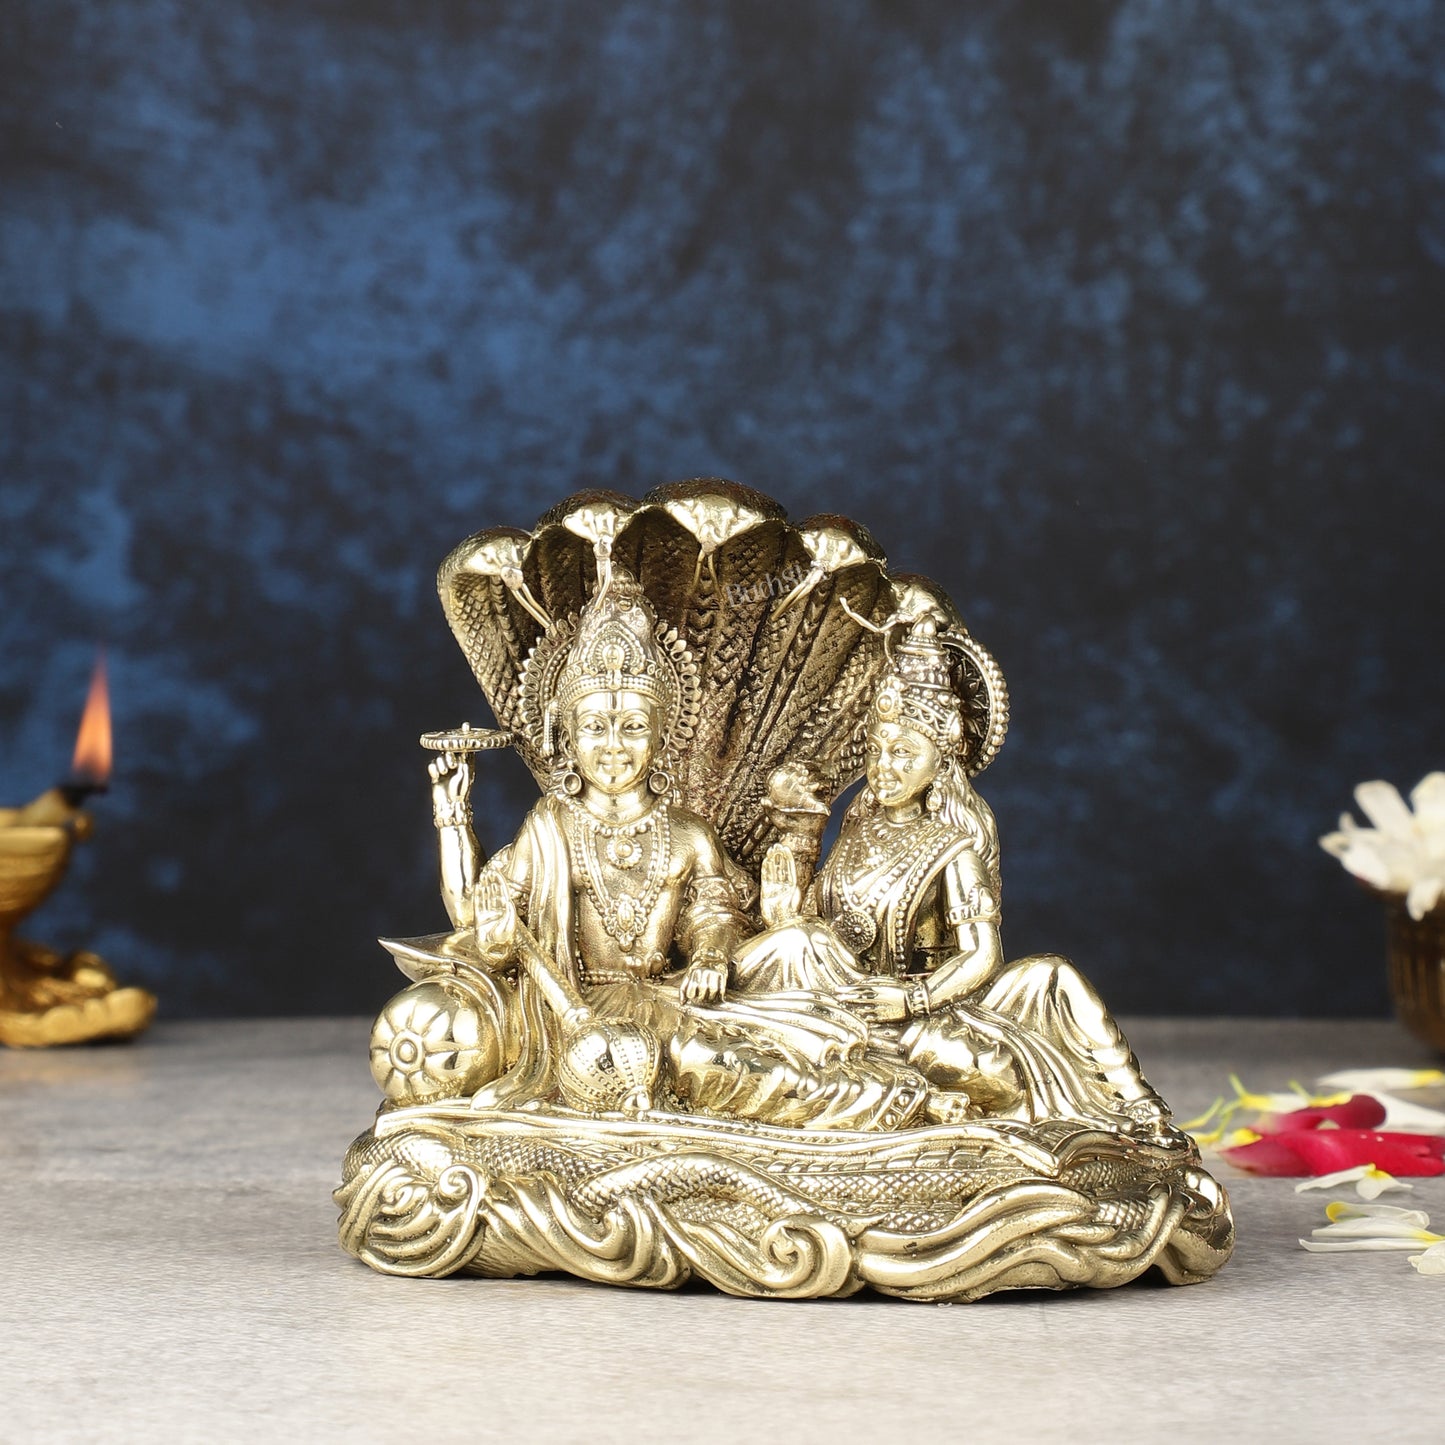 Superfine Brass Lakshmi Narayana Vishnu Idol - 5.5 inch